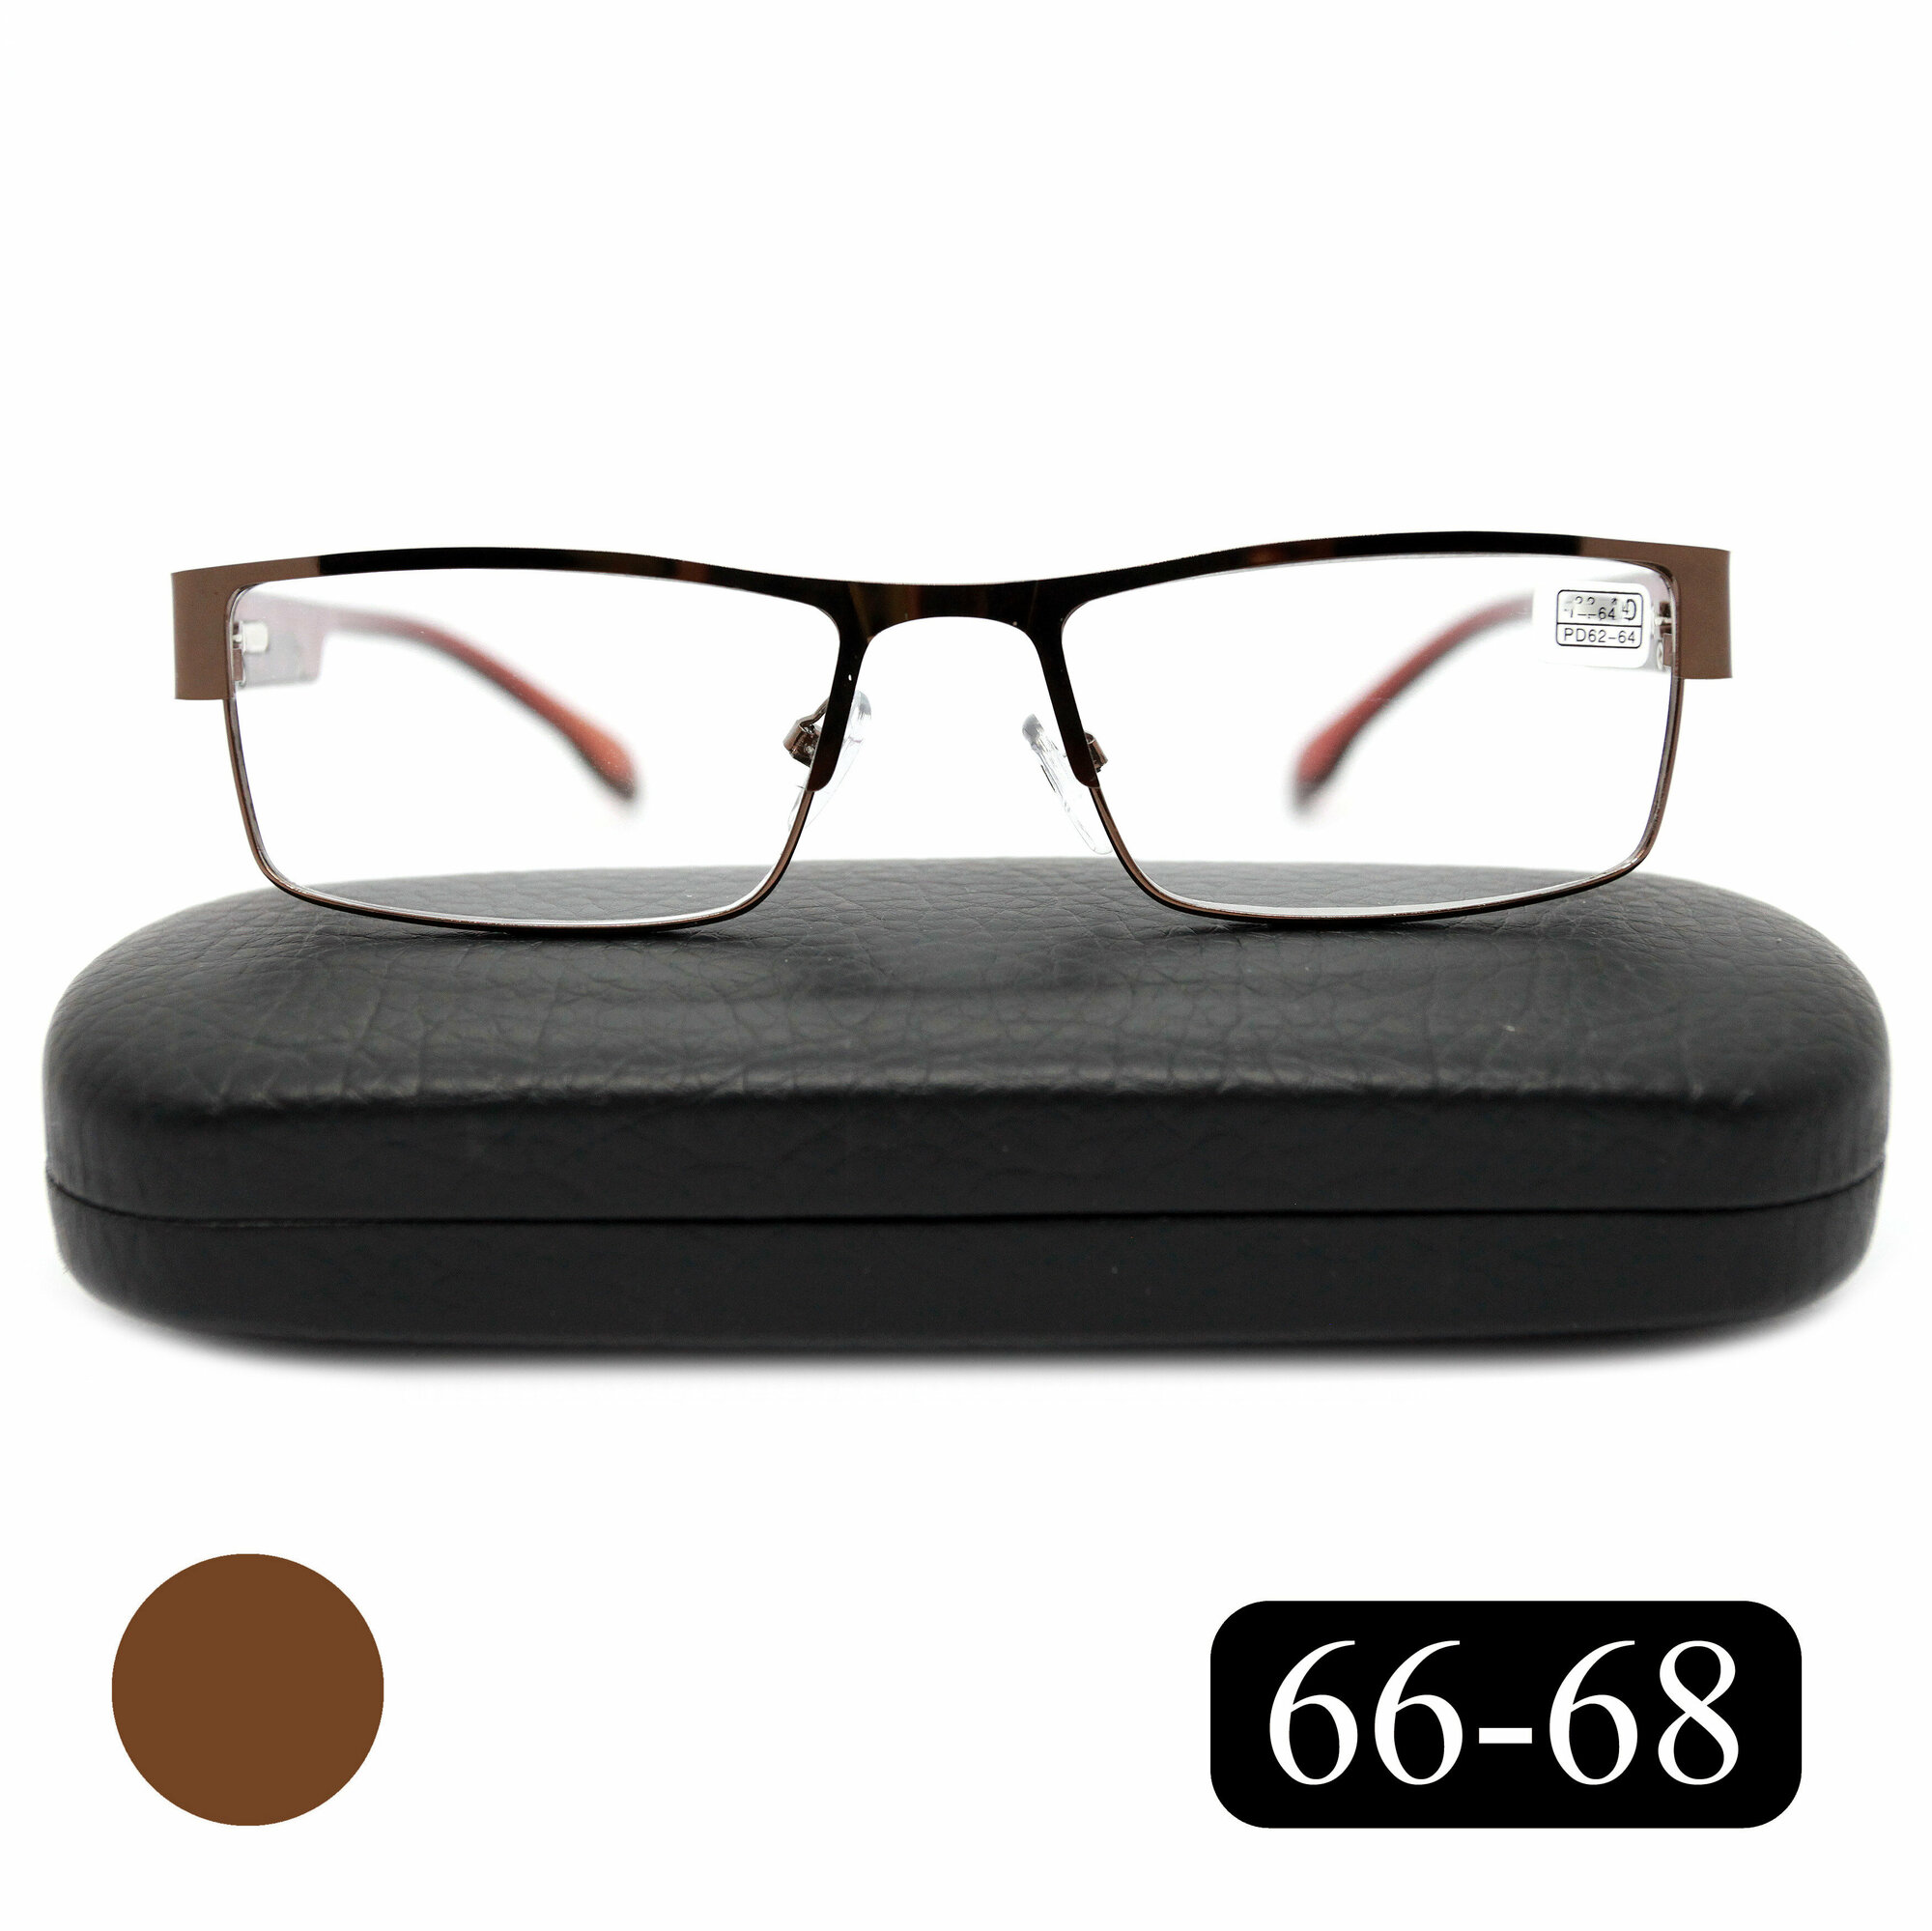 Очки для чтения 66-68 мужские женские (+0.50) мост 019-M1, с футляром, цвет коричневый, линзы пластик, РЦ 66-68